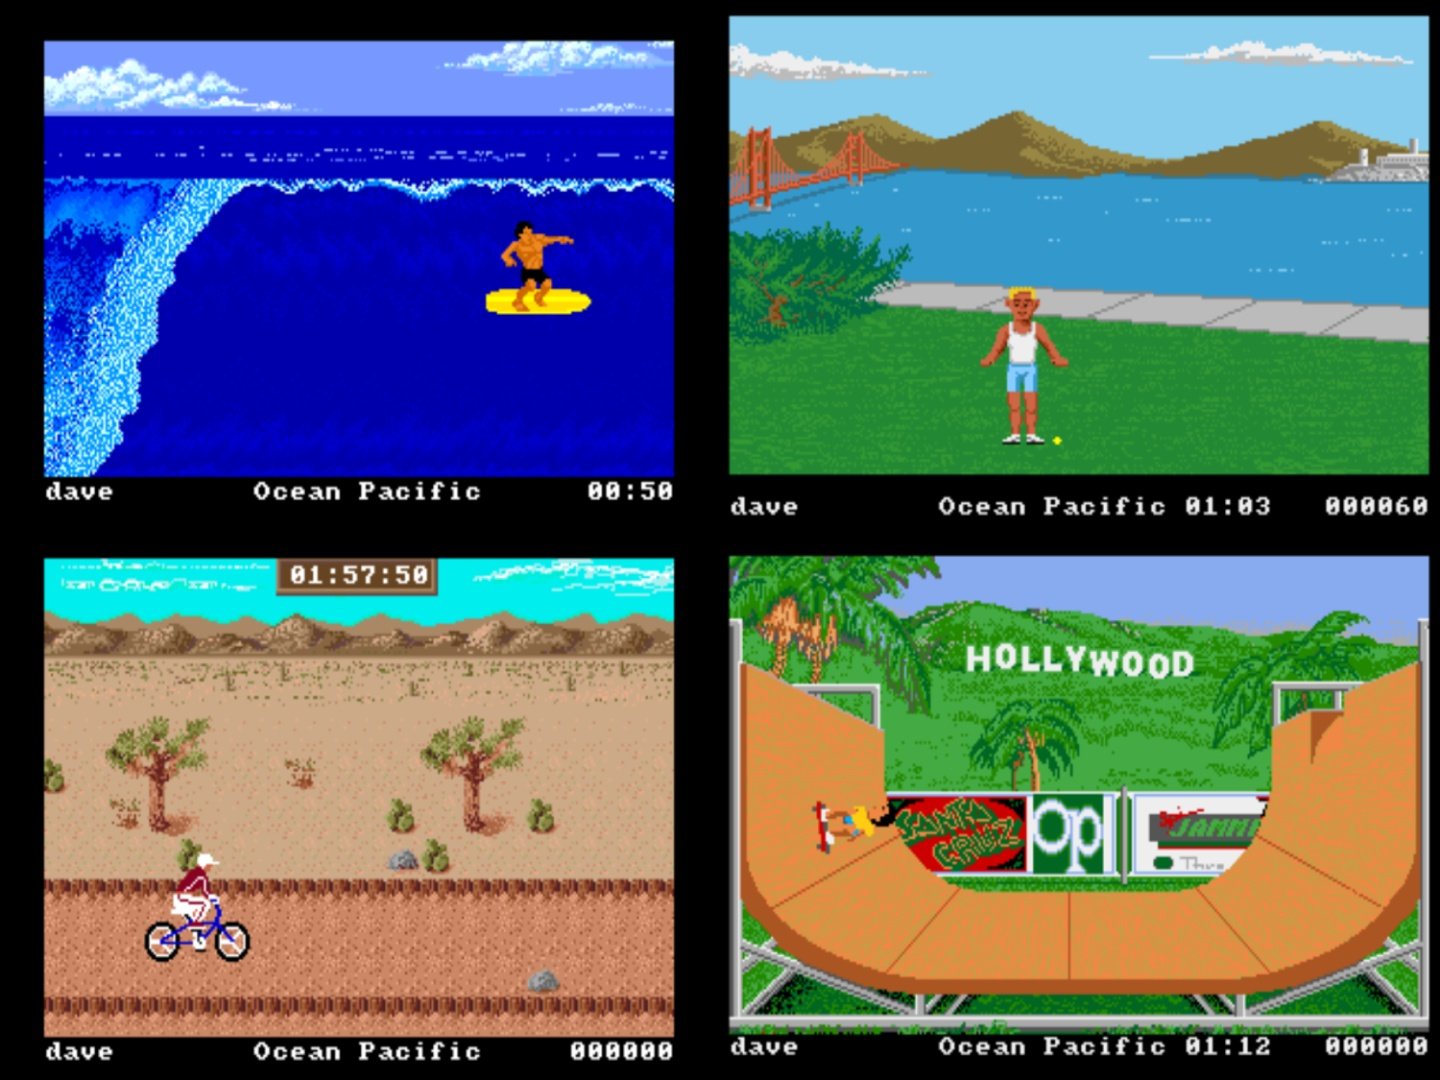 The Amiga version of California Games